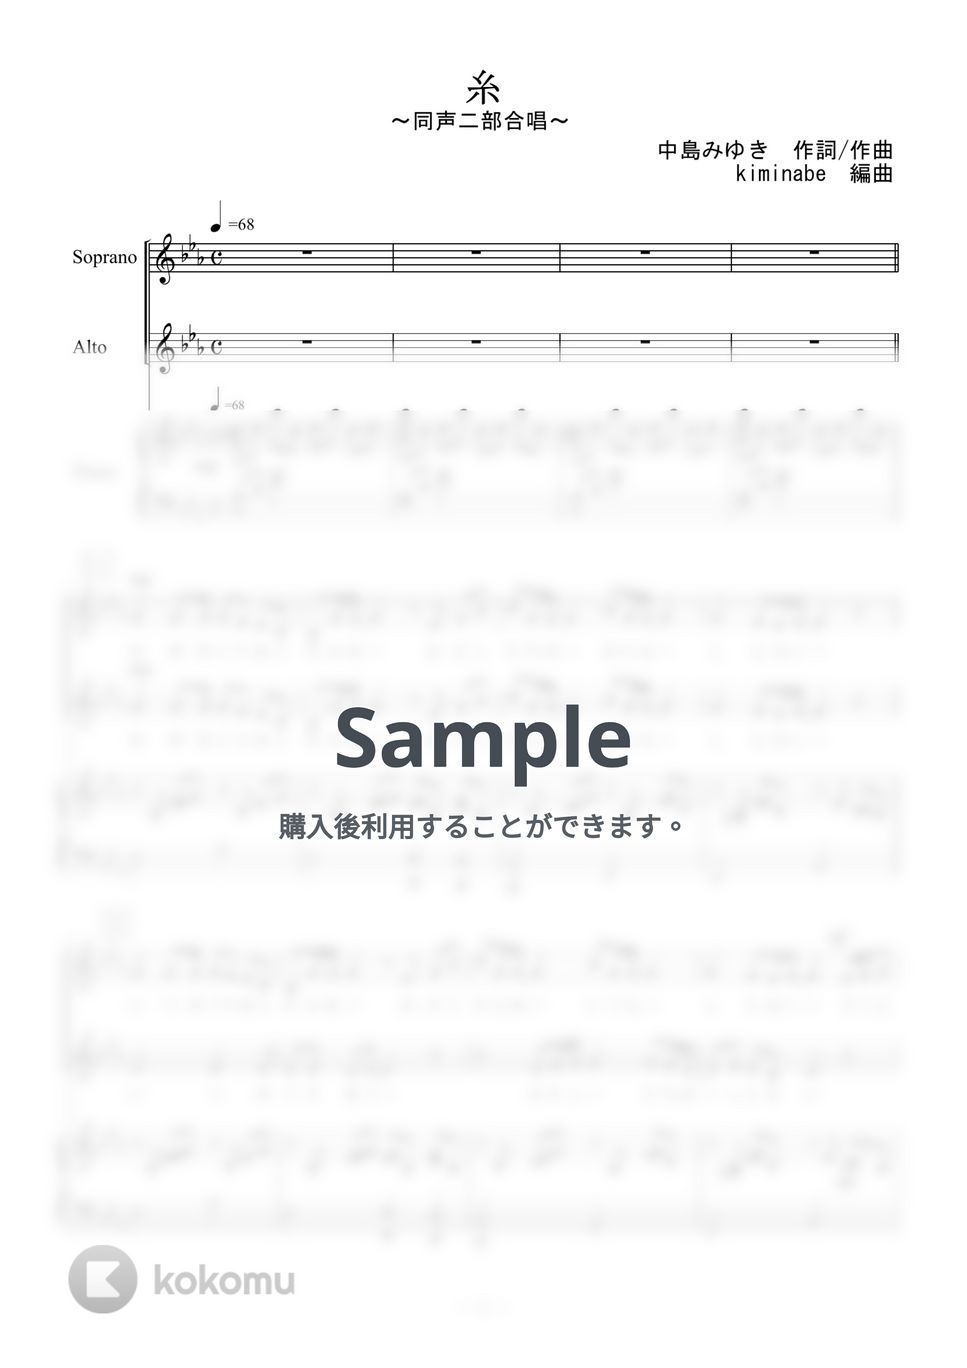 中島みゆき - 糸 (同声二部合唱) by kiminabe